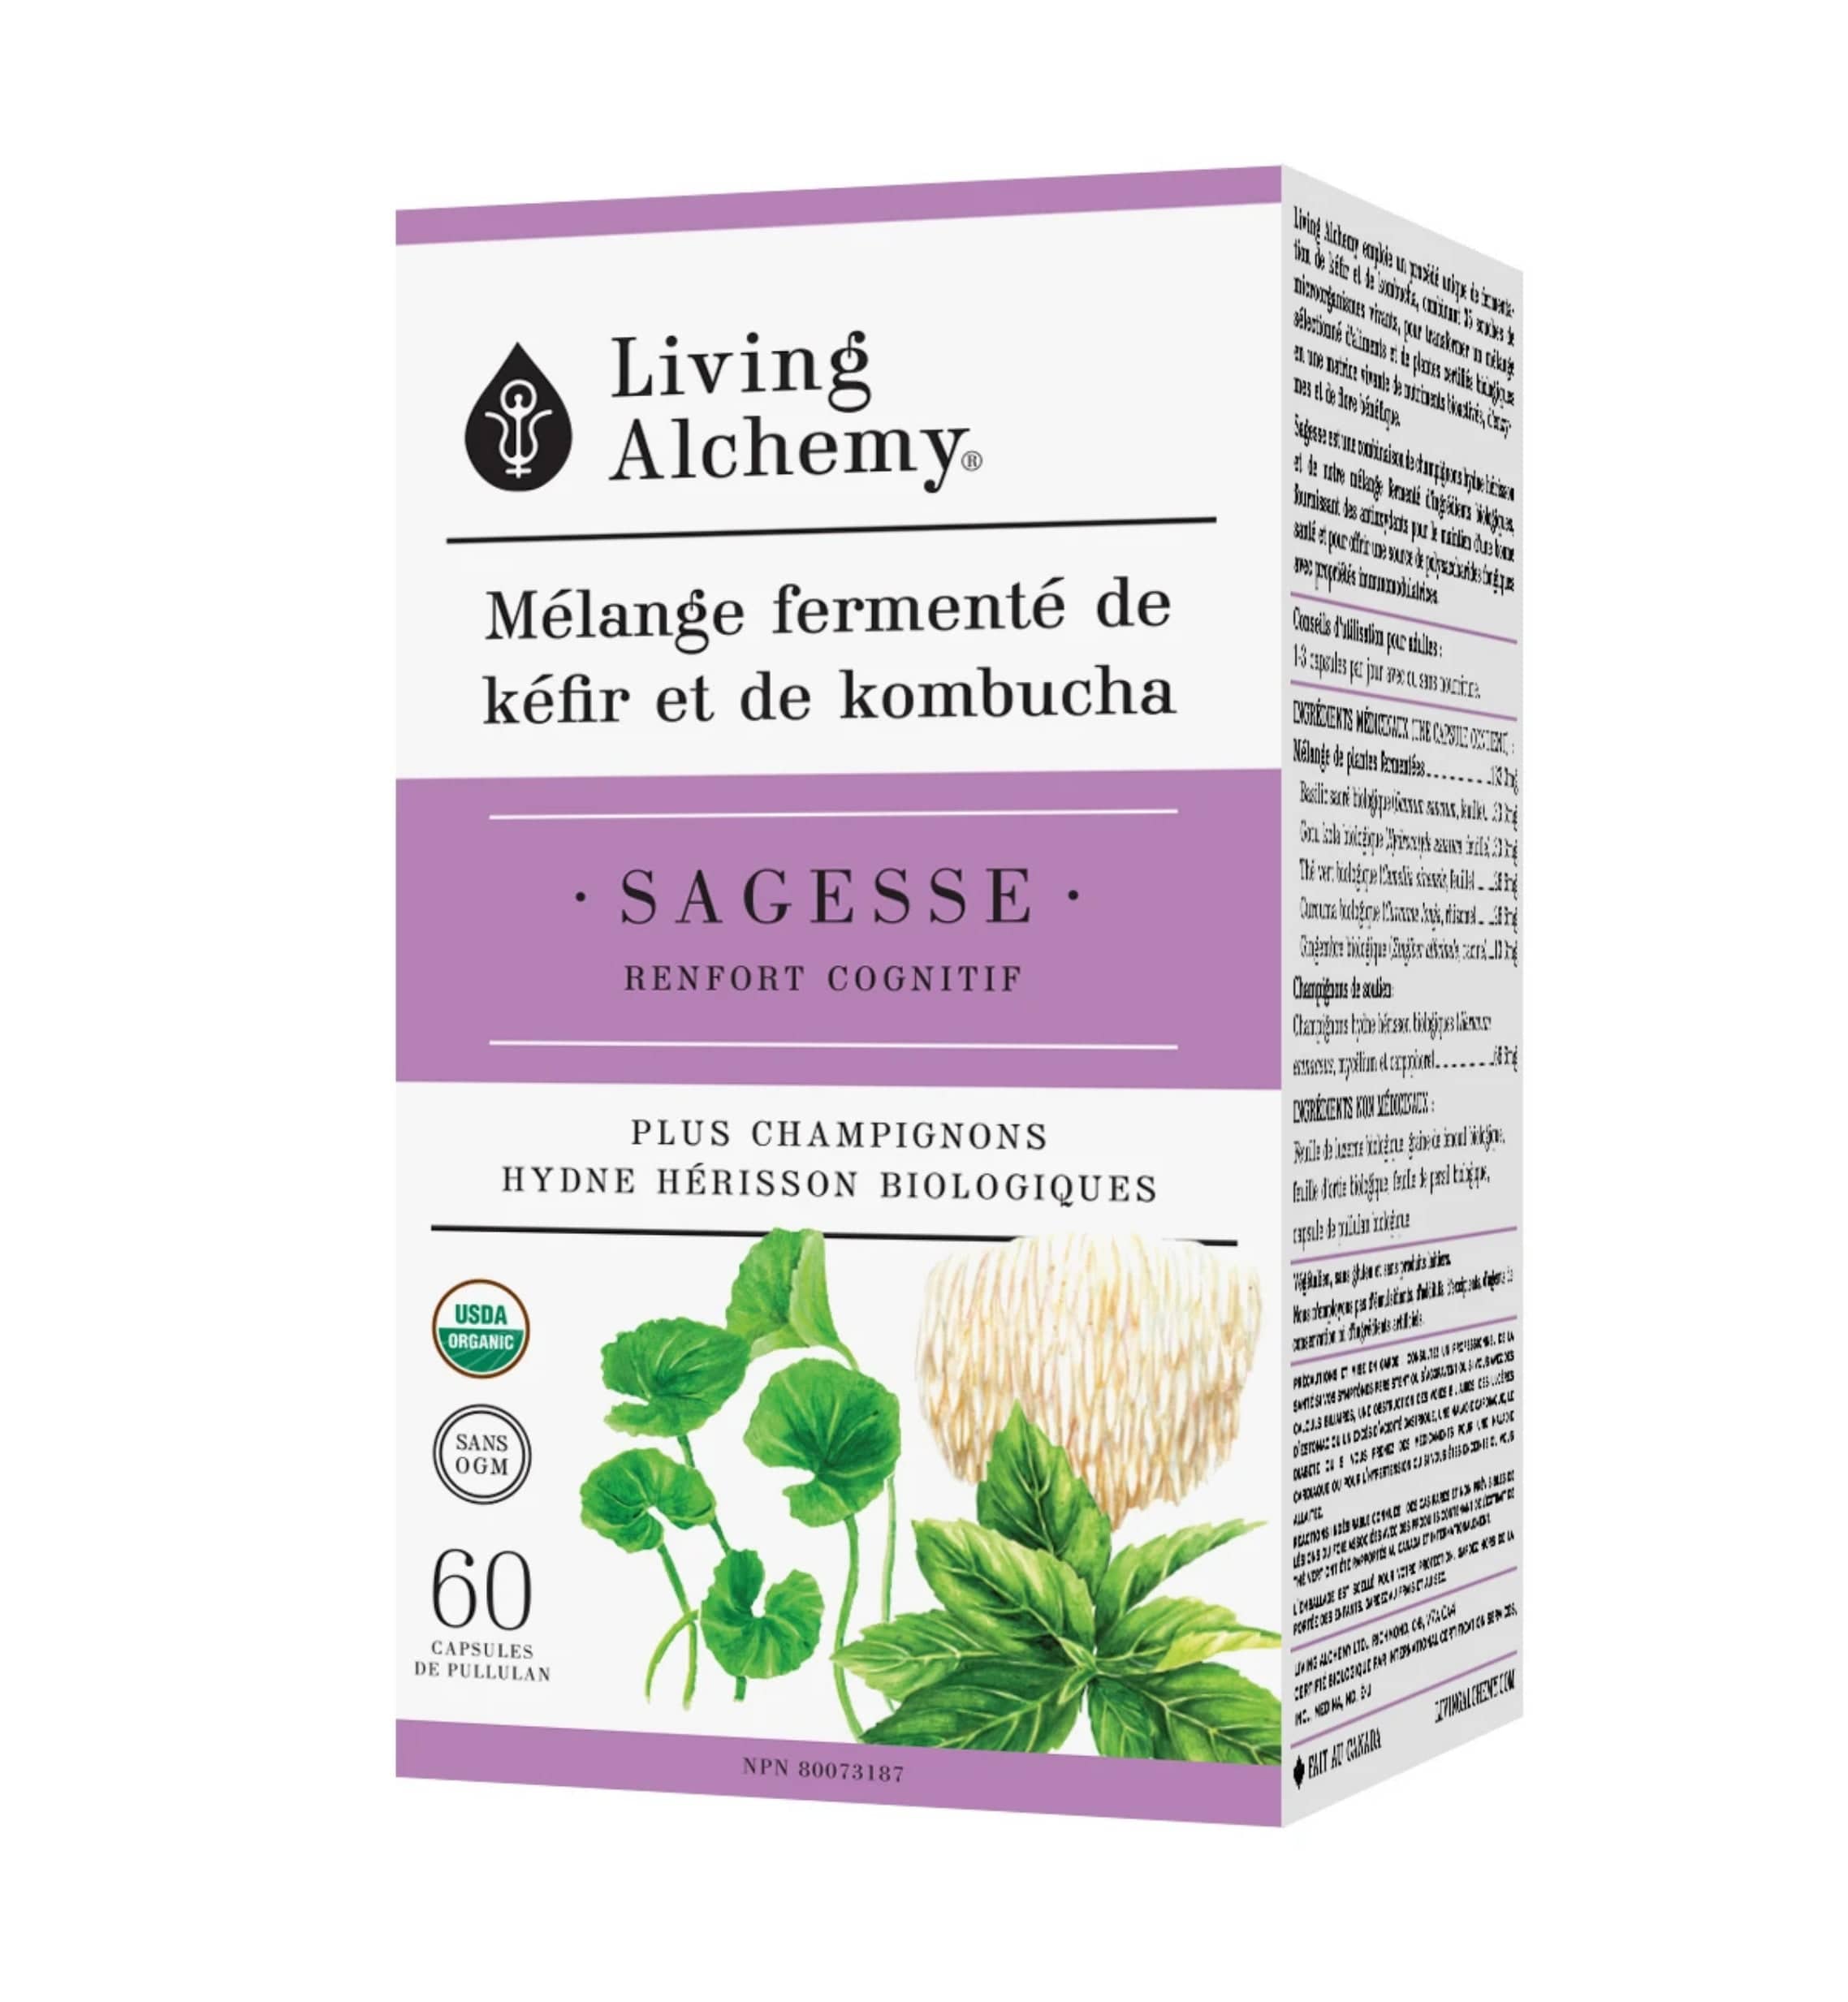 LIVING ALCHEMY Suppléments Mélange fermenté de kéfir et de kombucha - Sagesse (renfort cognitif)  60caps